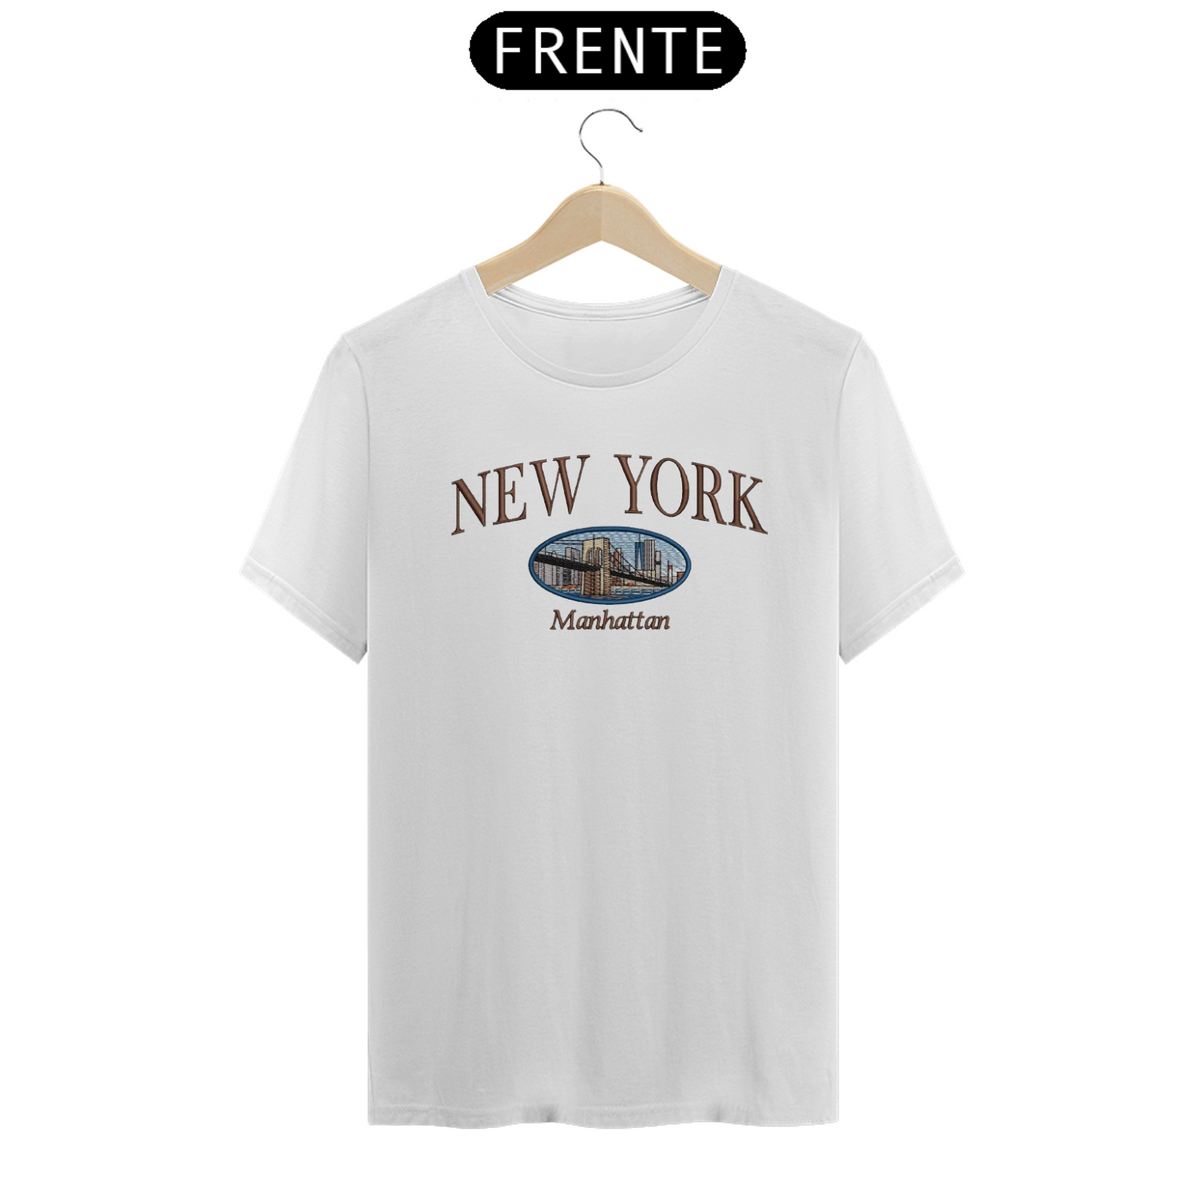 Nome do produto: T-Shirt New York\\Manhattan